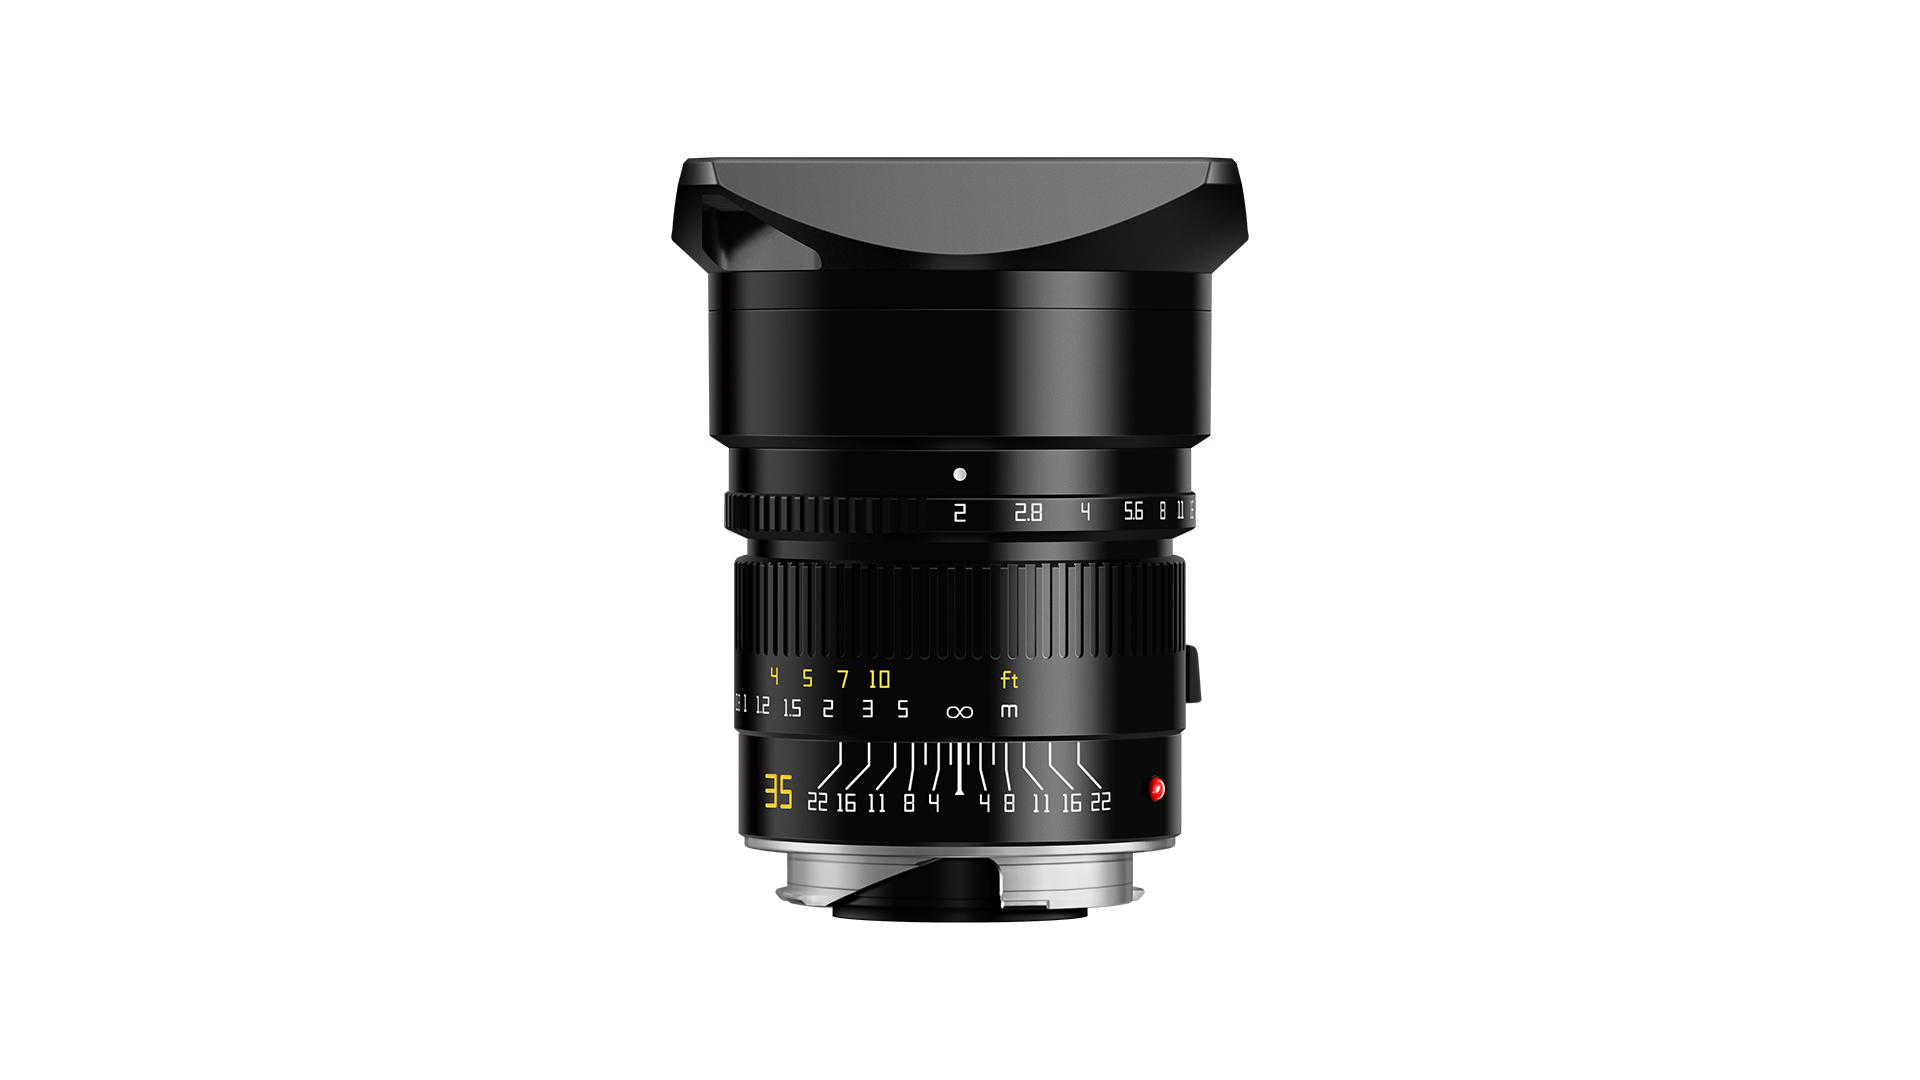 Ống kính TTartisan 35mm f2 for Leica M là một sản phẩm không thể thiếu trong bộ sưu tập của những người yêu thích chụp ảnh. Được thiết kế chính xác và sắc nét, chiếc ống kính này sẽ giúp bạn chụp được những bức ảnh chất lượng cao, sắc nét và đầy màu sắc. Hãy cùng xem hình ảnh sản phẩm để cảm nhận thêm về độ tuyệt vời của nó.